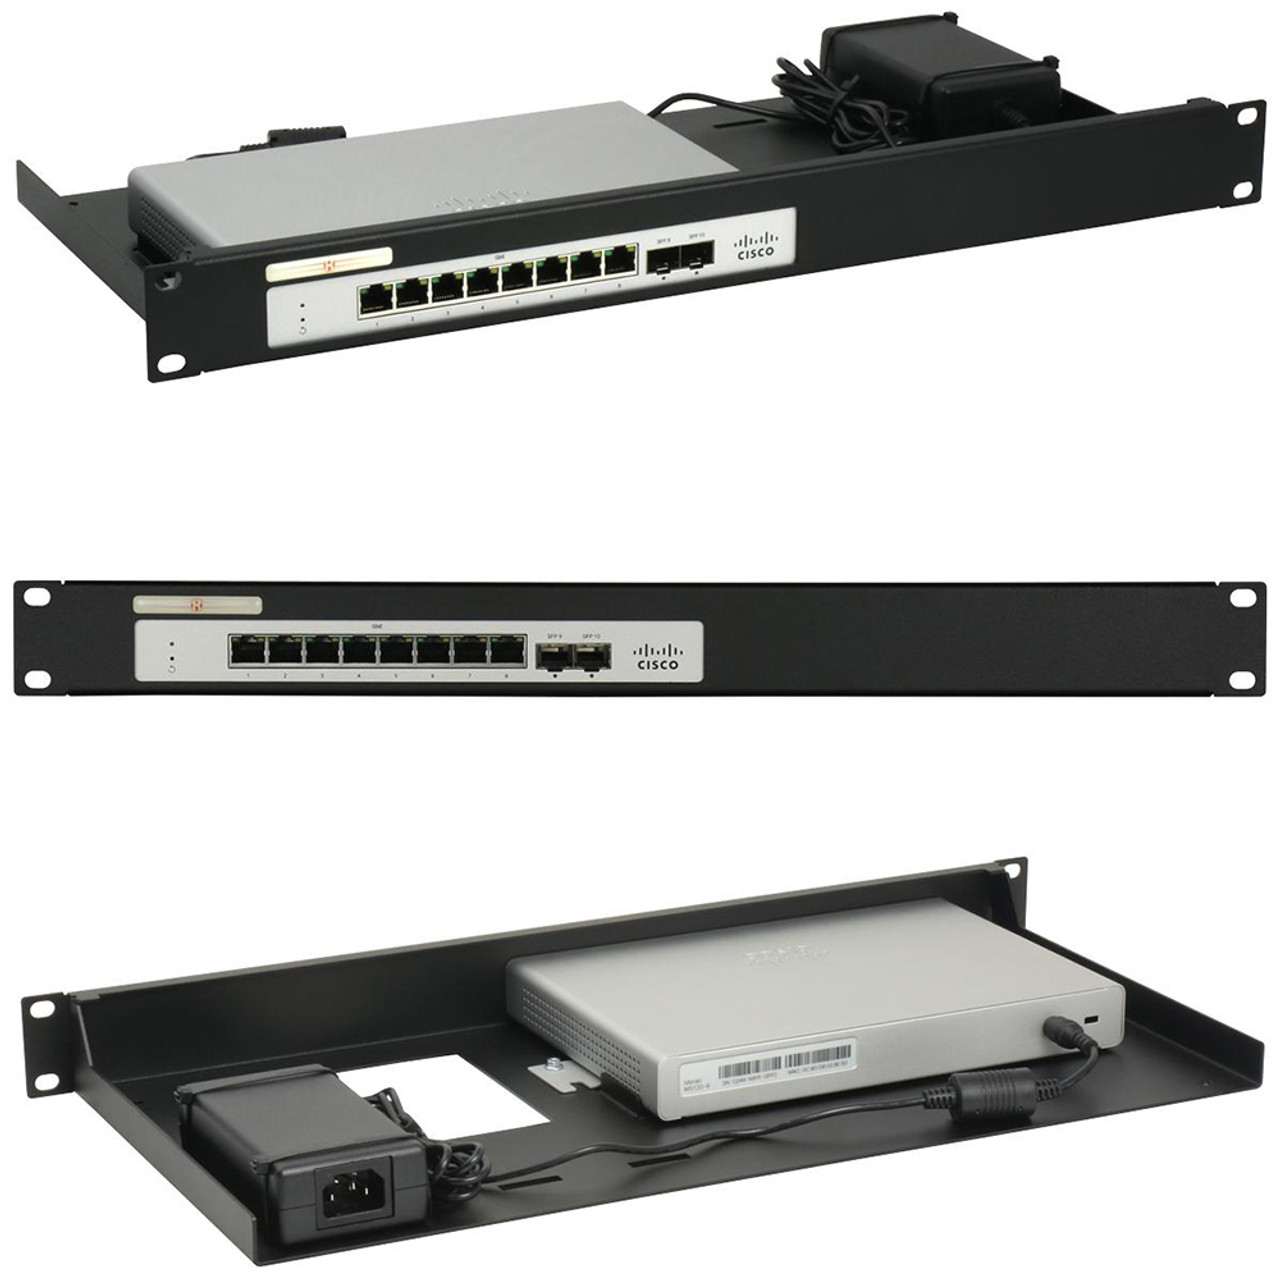 Rack Mount Kit for Cisco Meraki 120-8-HW / 120-8LP-HW